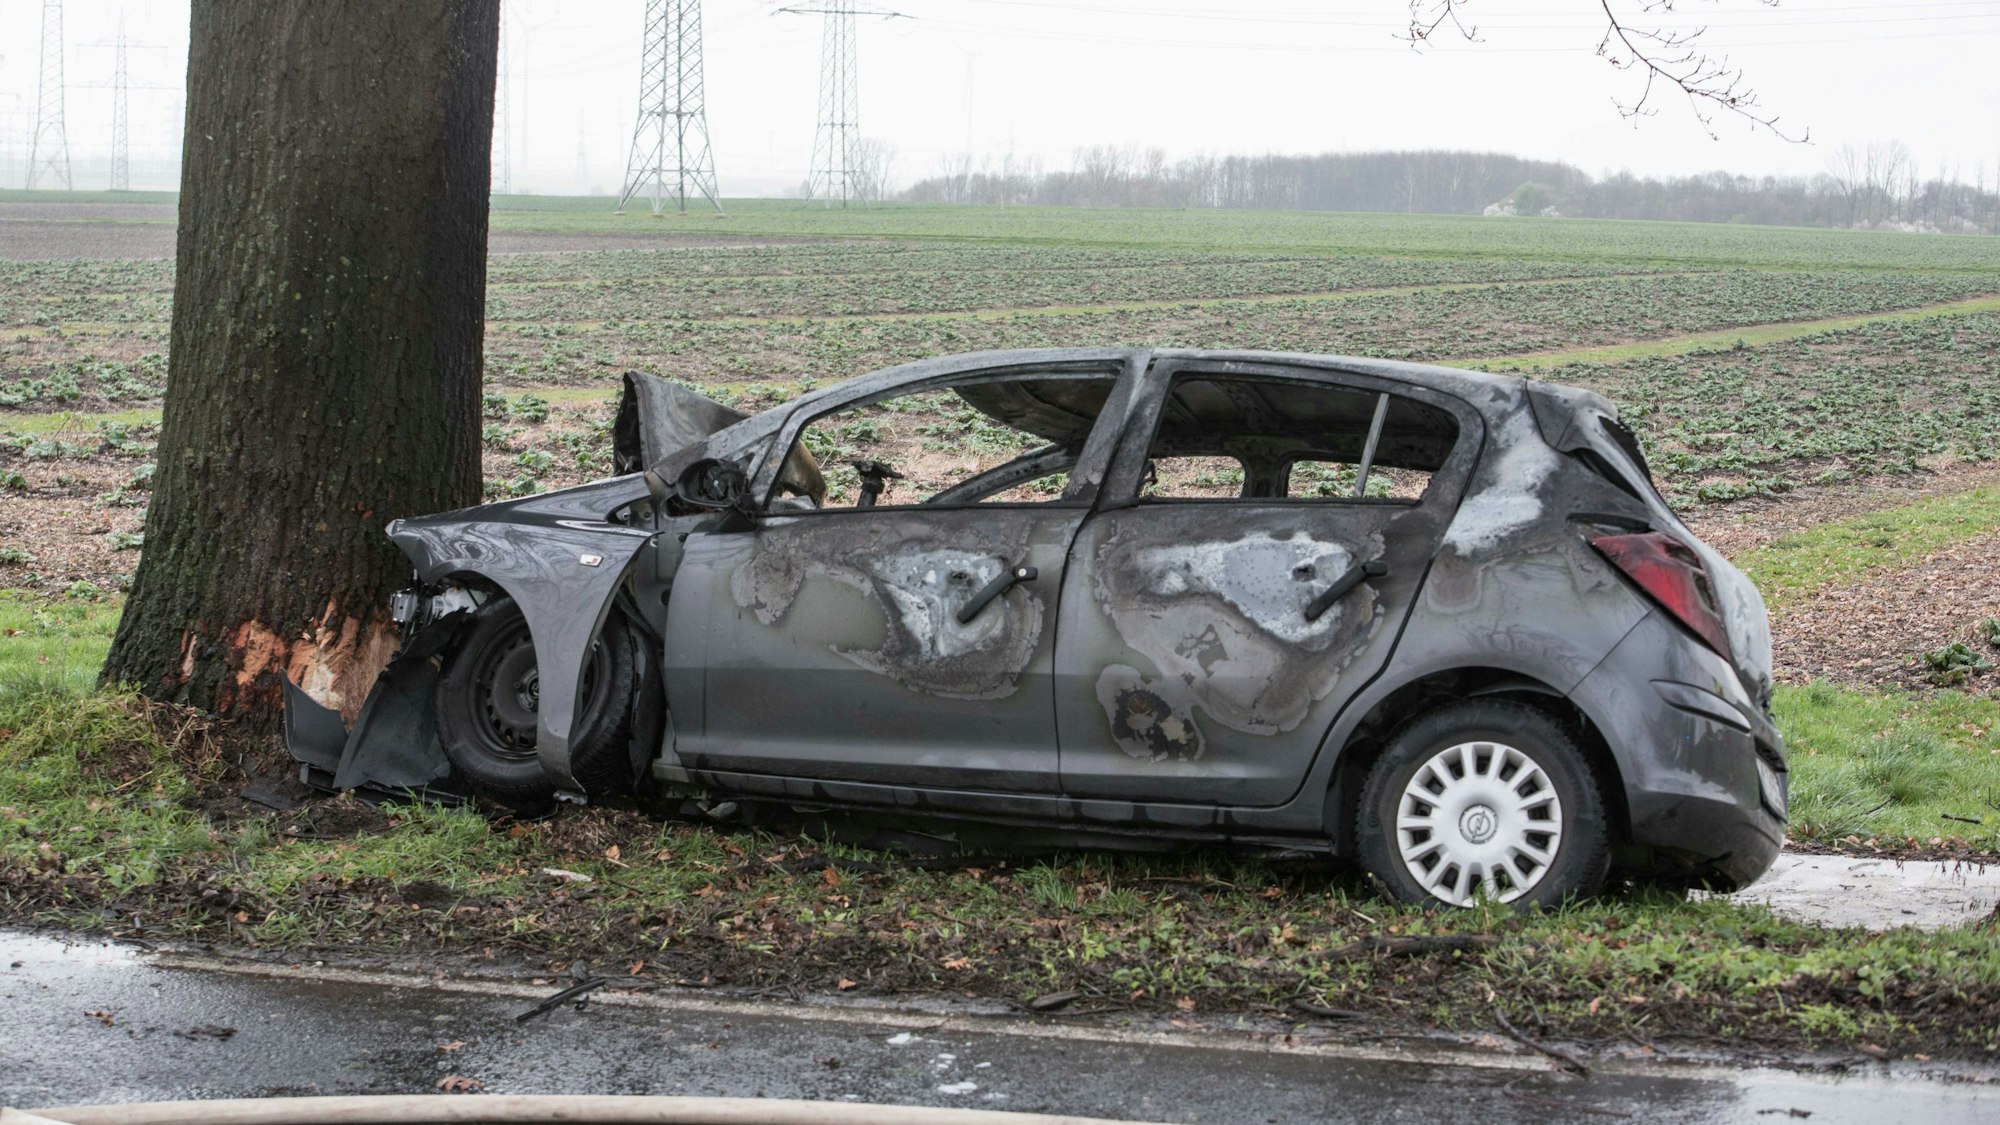 Foto eines zerstörten Autos, das gegen einen Baum geprallt ist und Feuer gefangen hat. Der Fahrer ist kurz darauf verstorben.